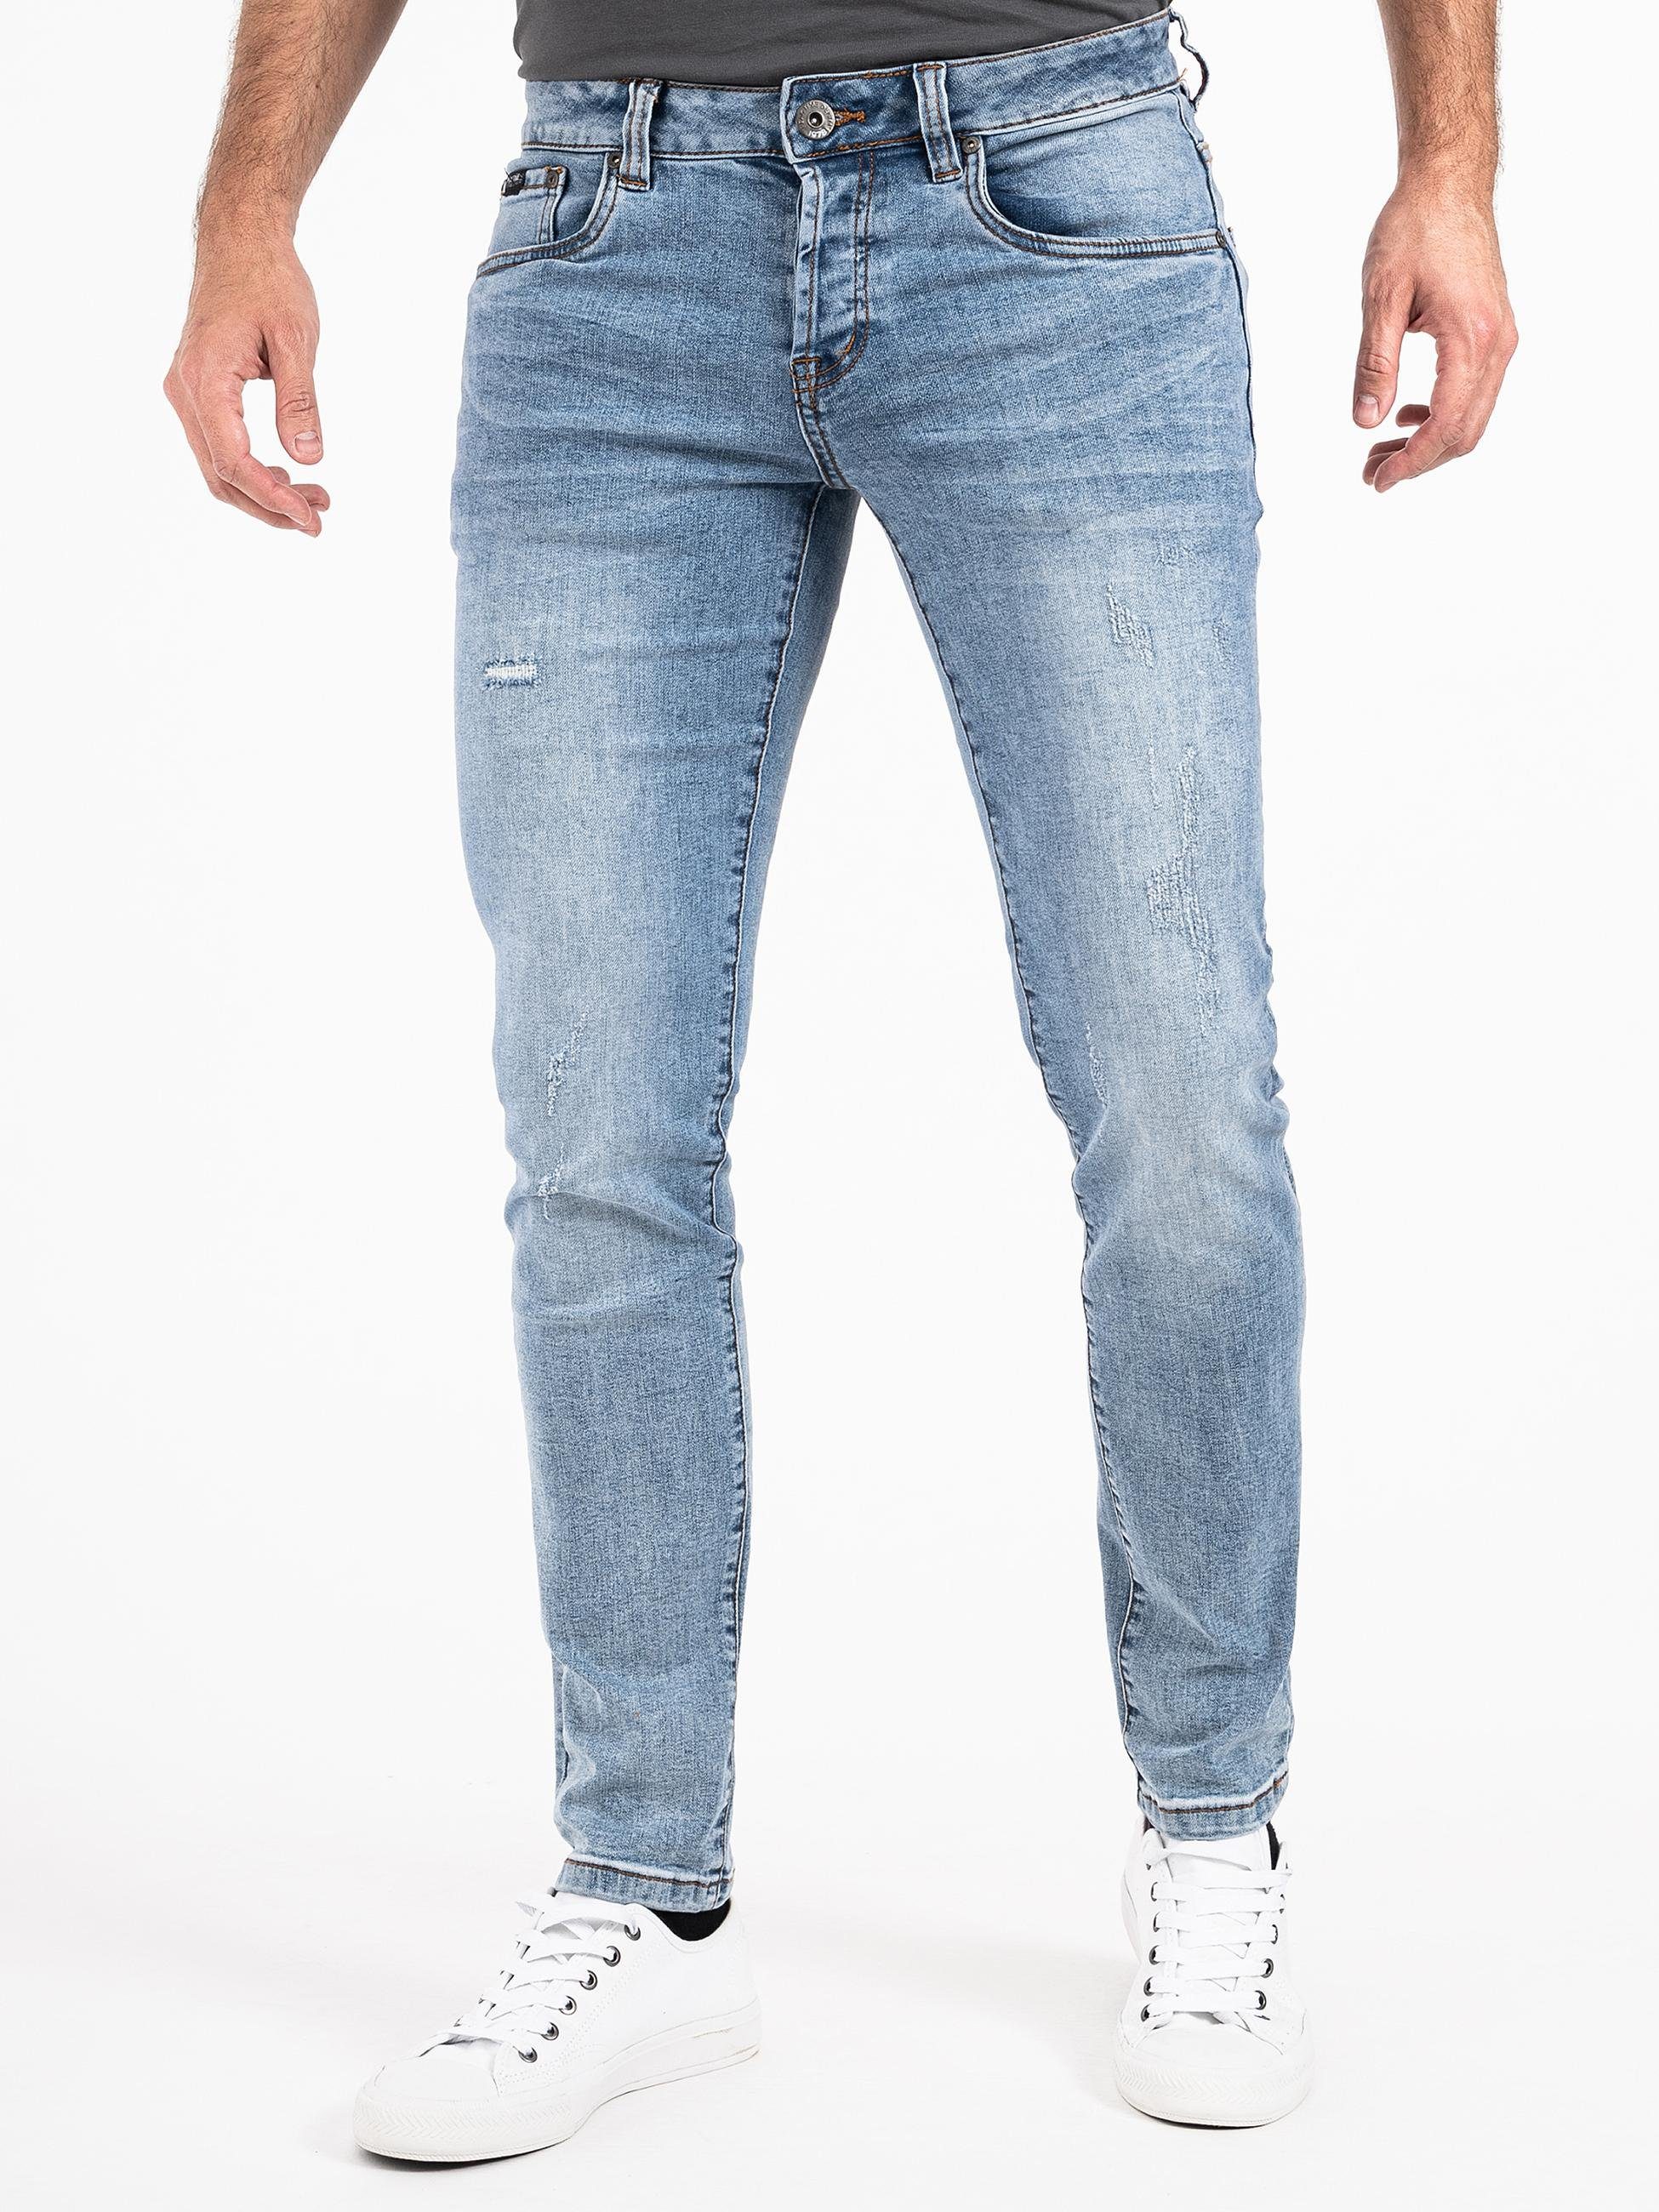 PEAK TIME Slim-fit-Jeans München Herren Jeans mit Stretch-Bund und Destroyed-Optik hellblau